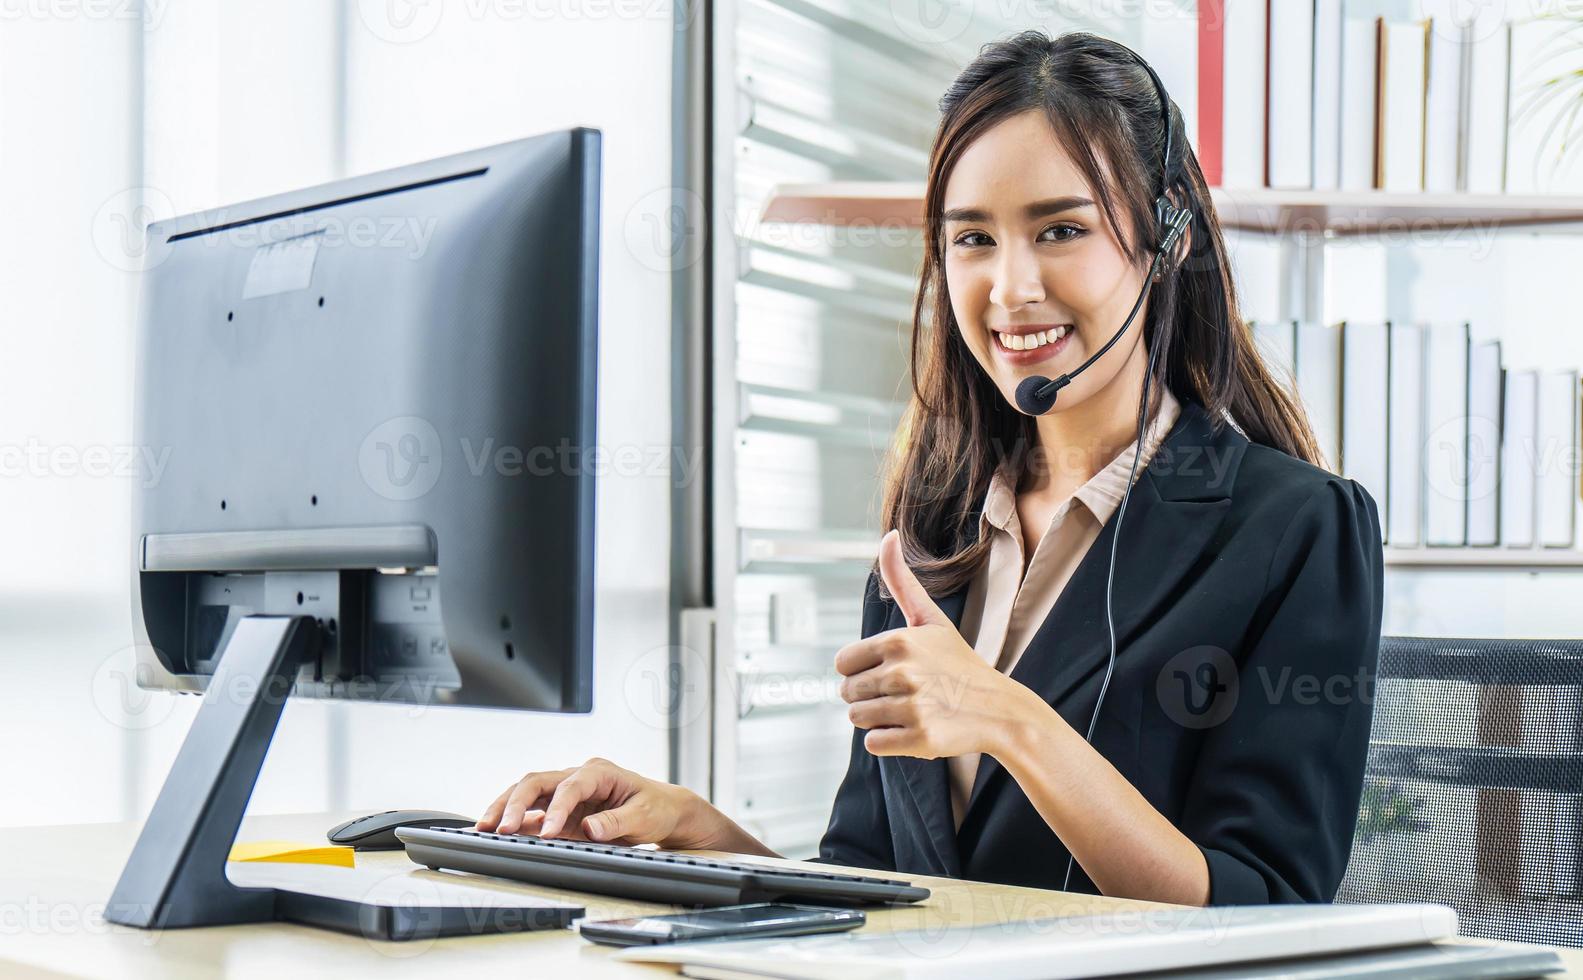 agent de centre d'appel féminin asiatique souriant et sympathique avec casque montrant les pouces vers le haut pour travailler sur la ligne d'assistance téléphonique au bureau, concept d'esprit de service photo